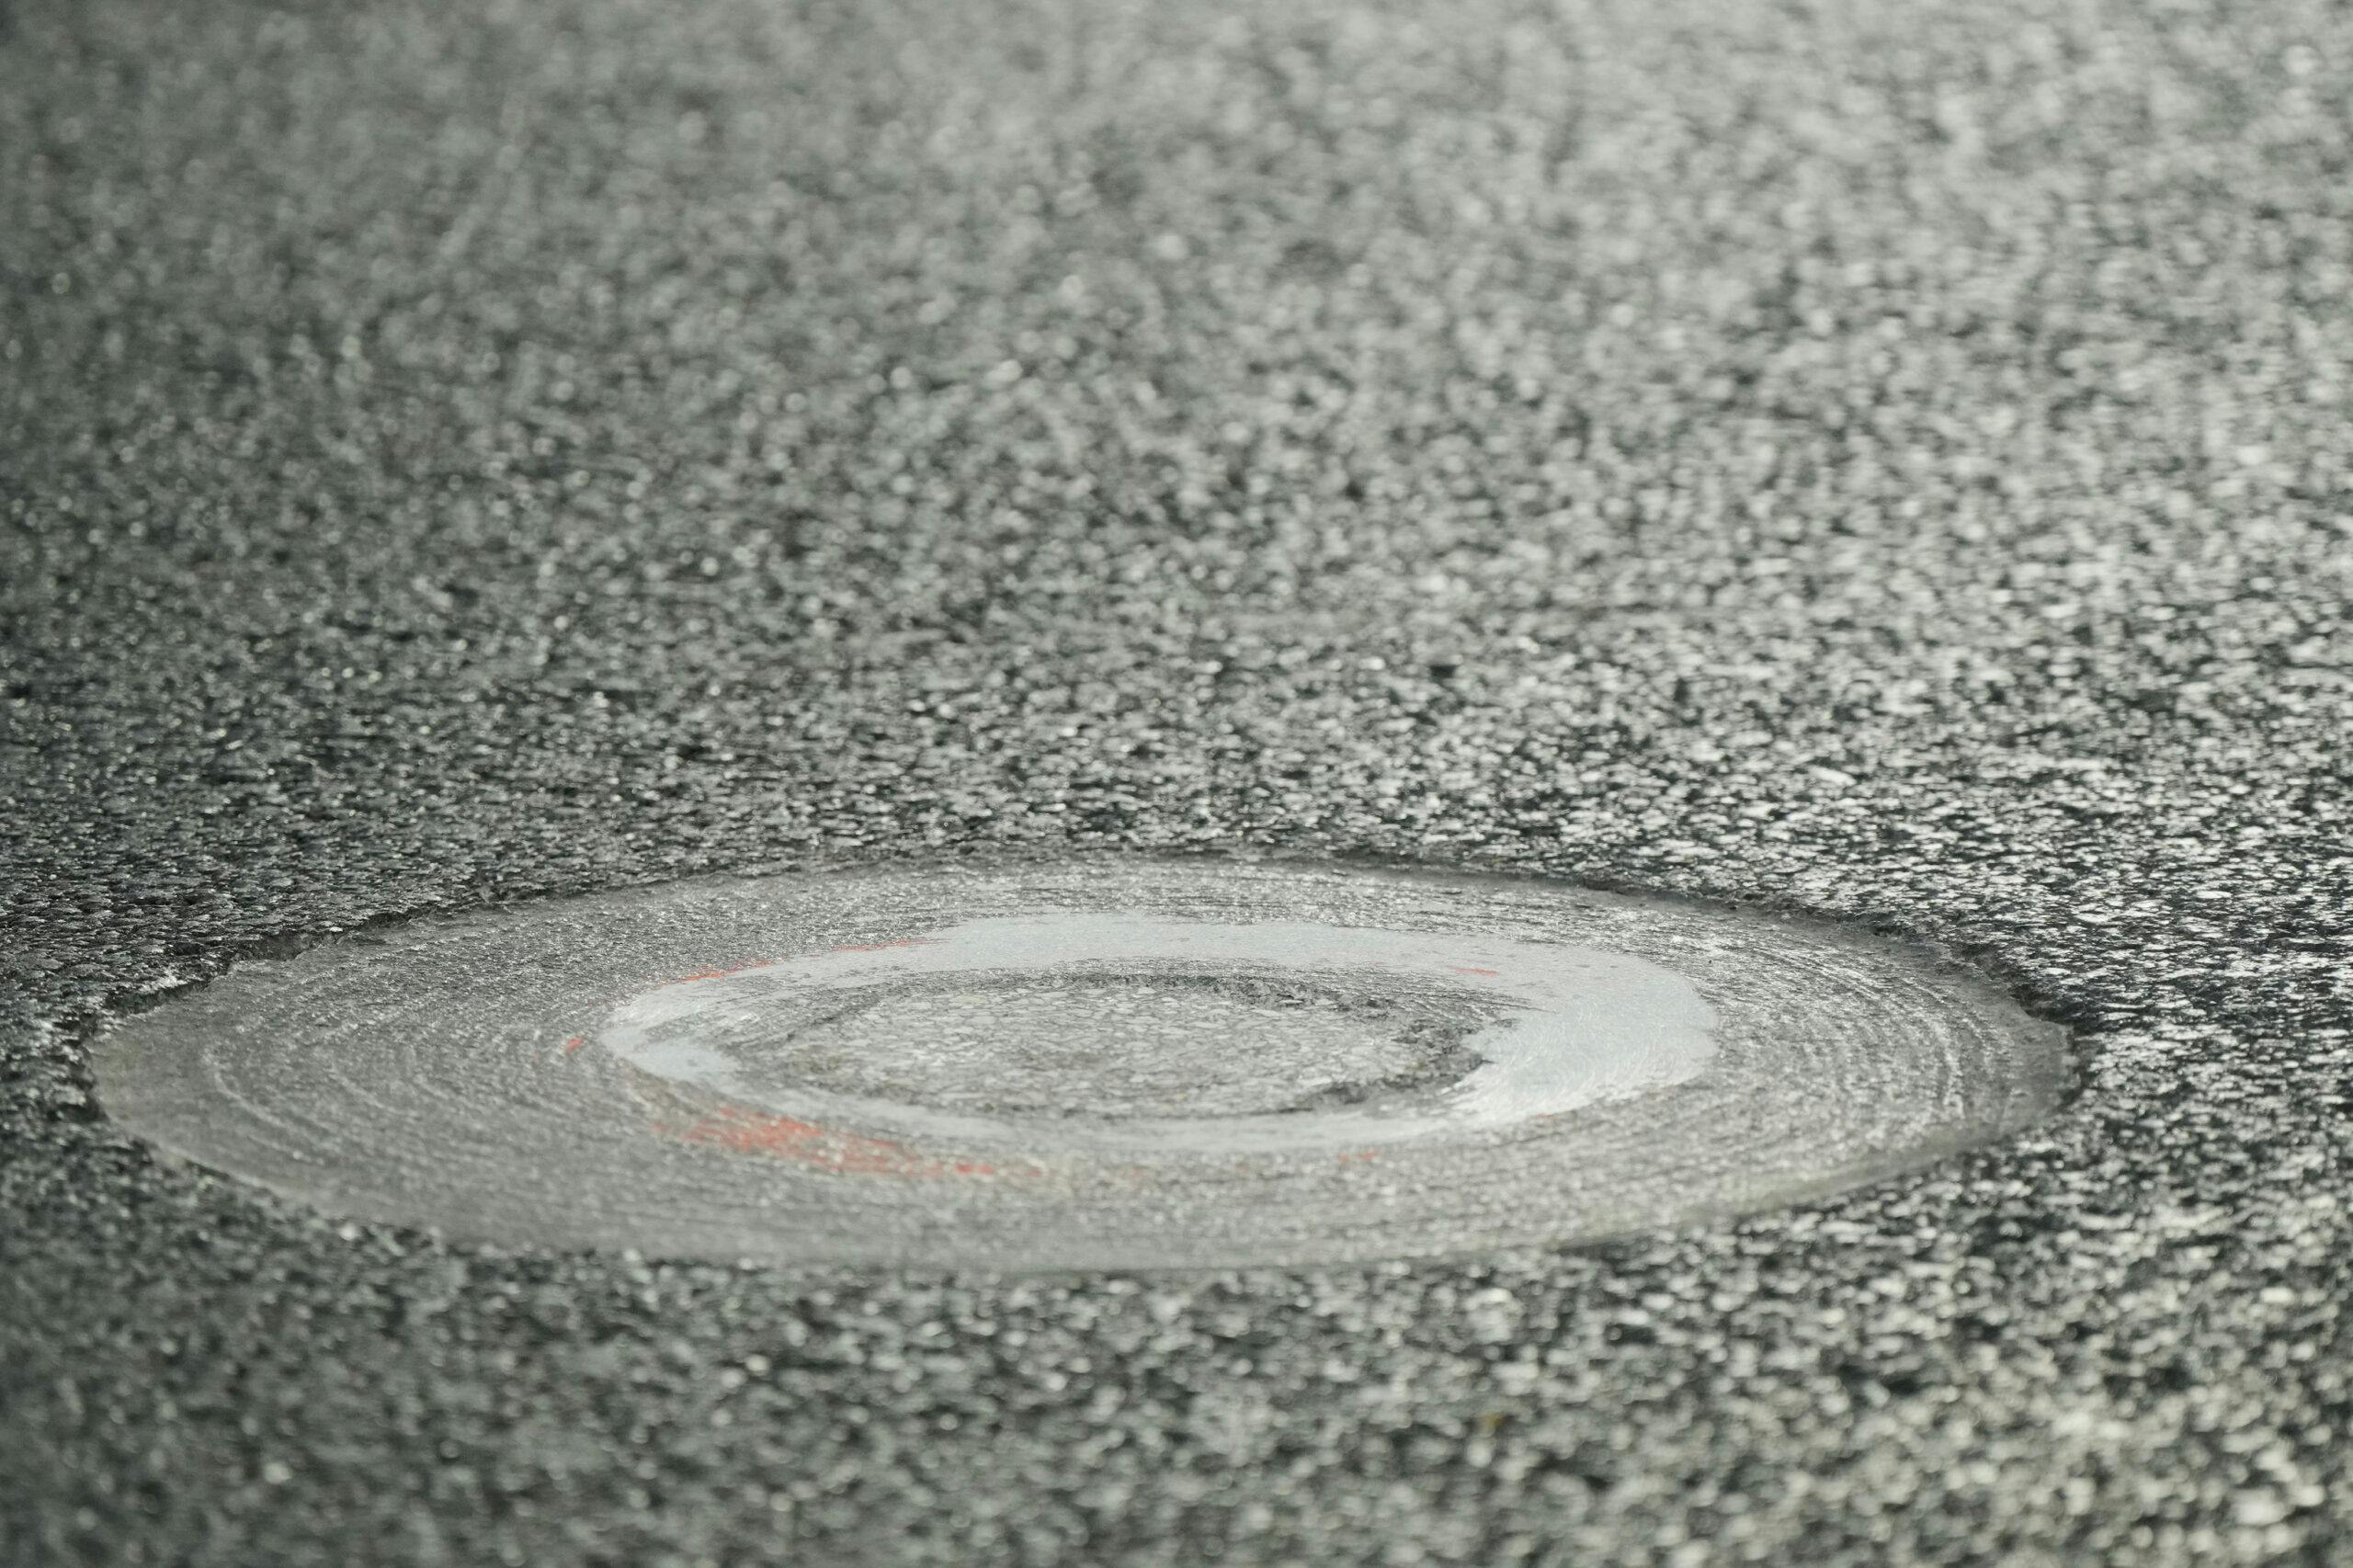 F1 Las Vegas manhole cover repair